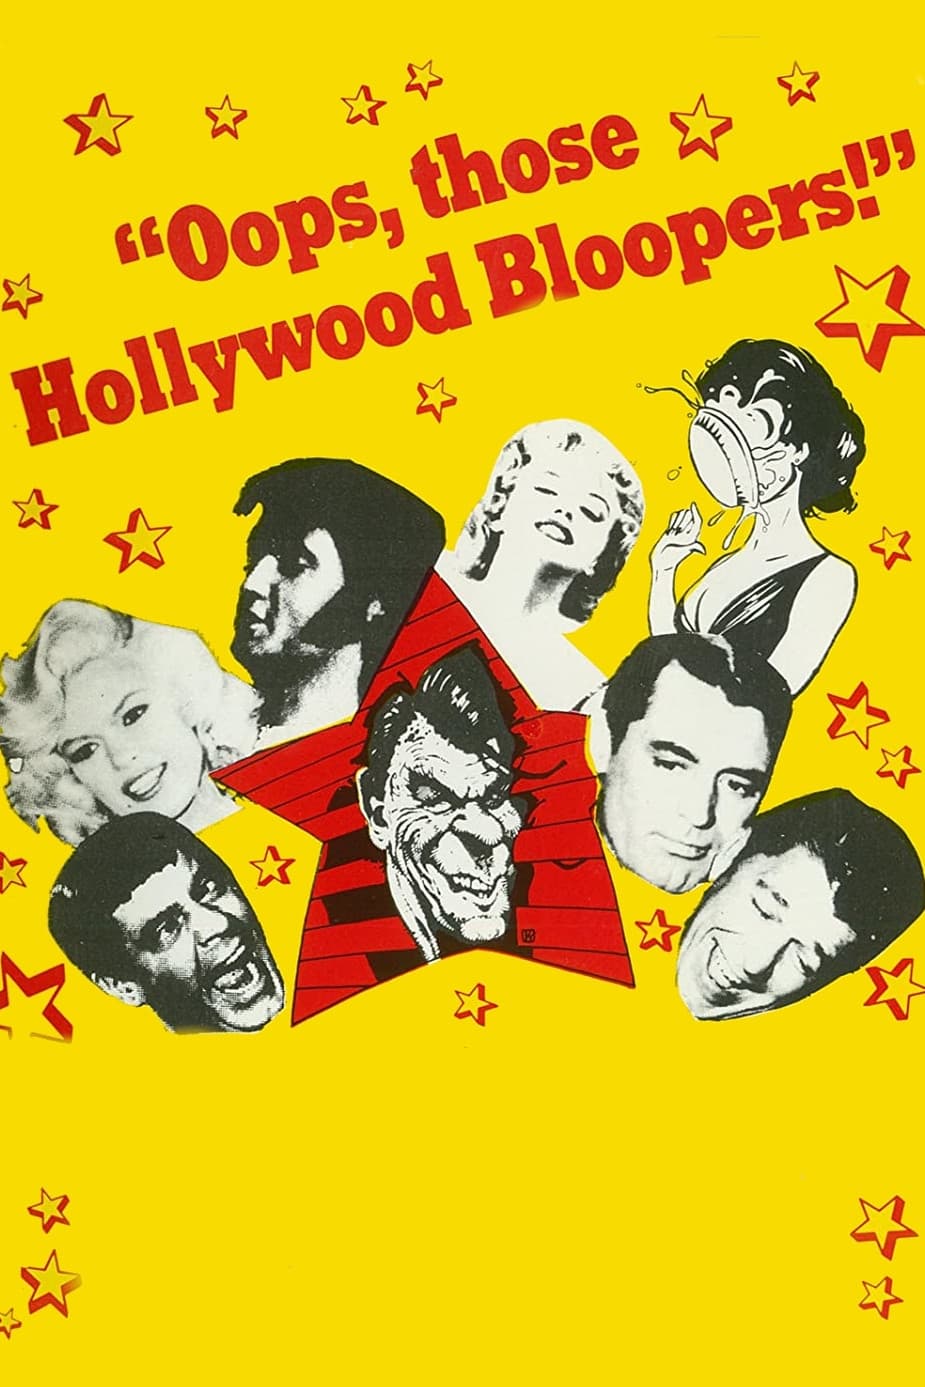 Oops, Those Hollywood Bloopers! (1982)